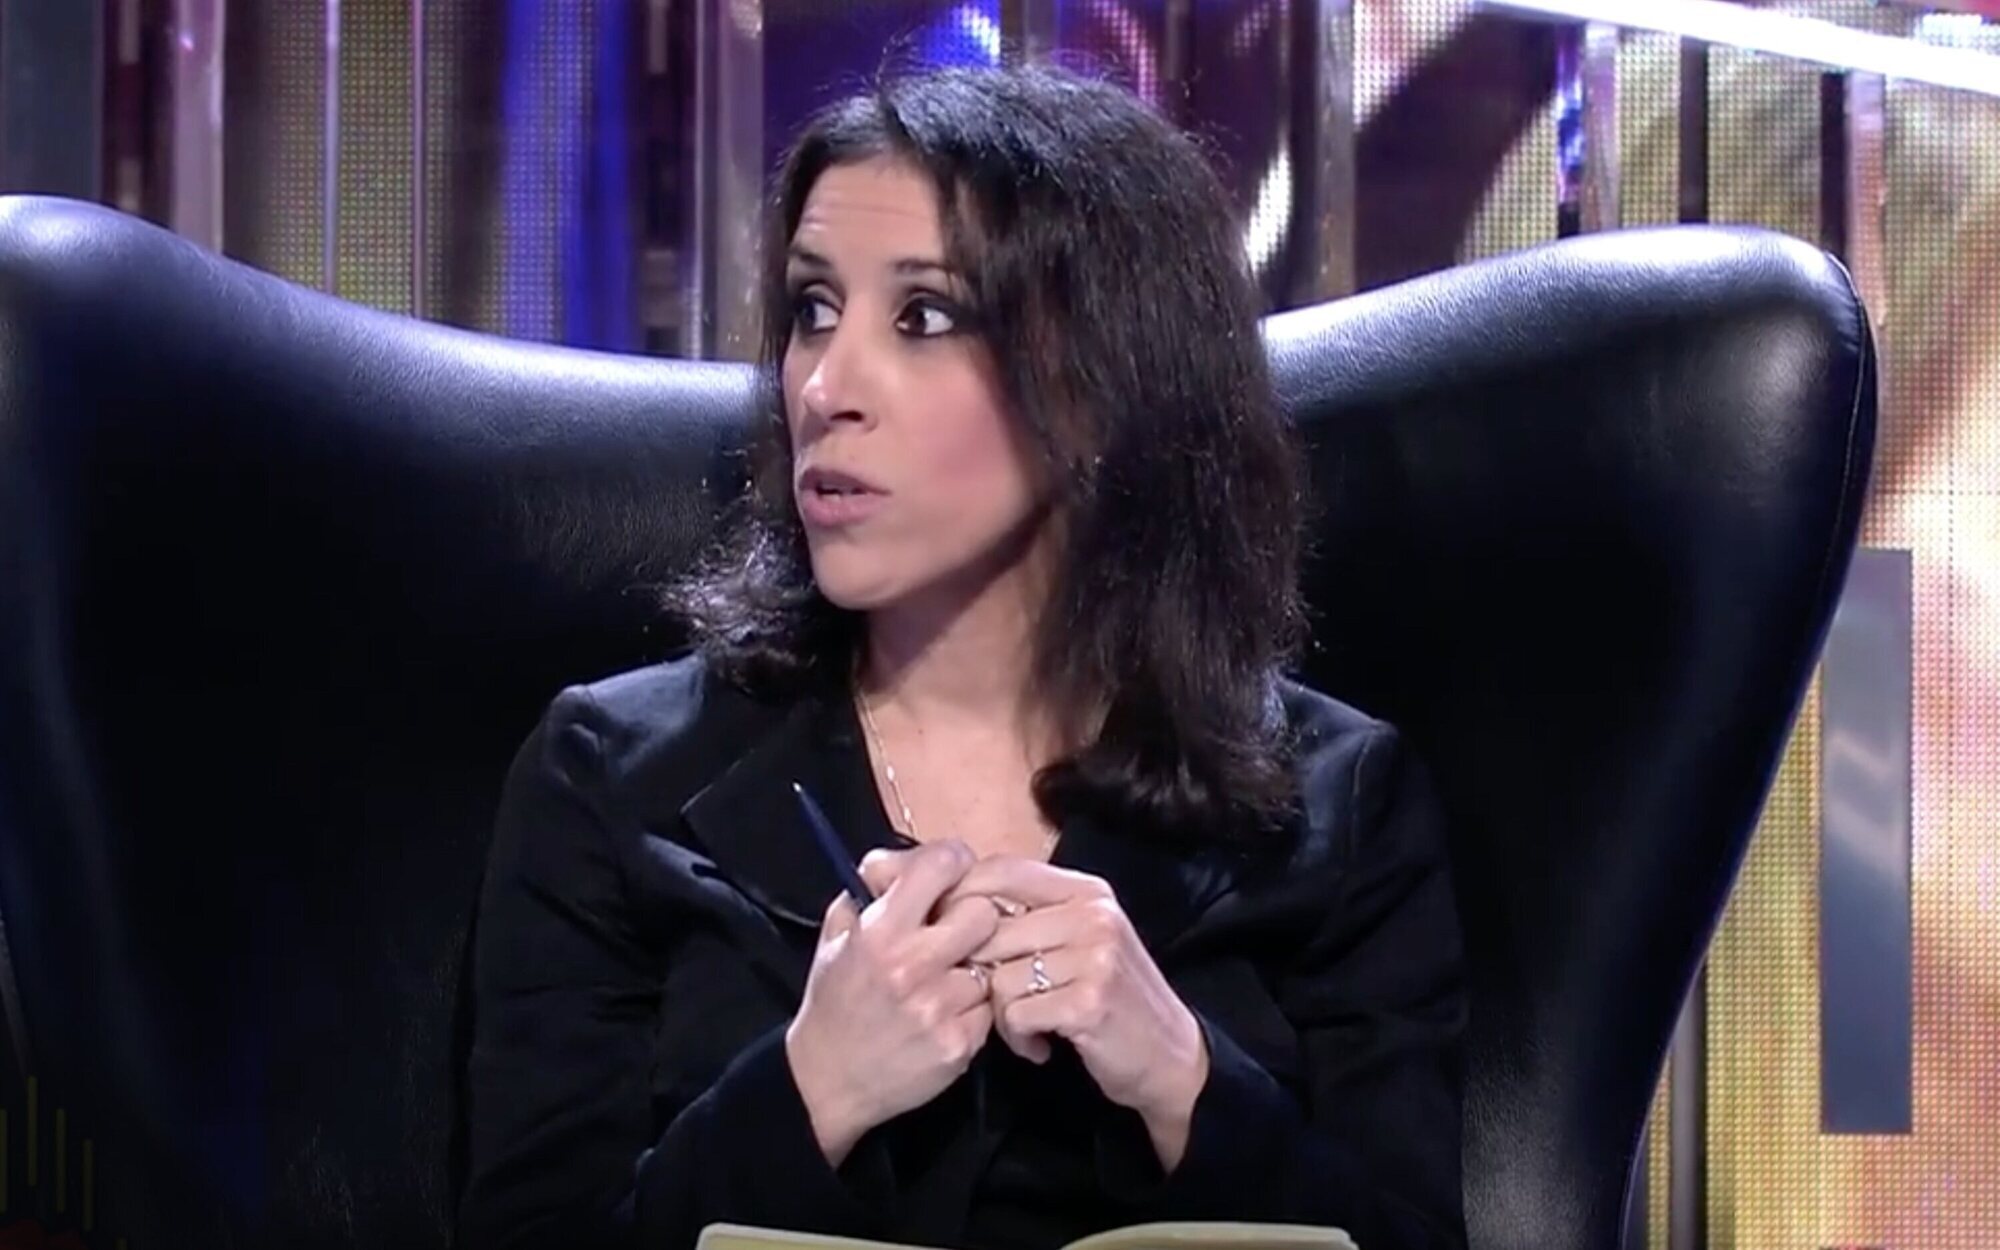 Ana Bernal critica con dureza a Telecinco por dar voz a negacionistas de Rocío Carrasco en otros programas